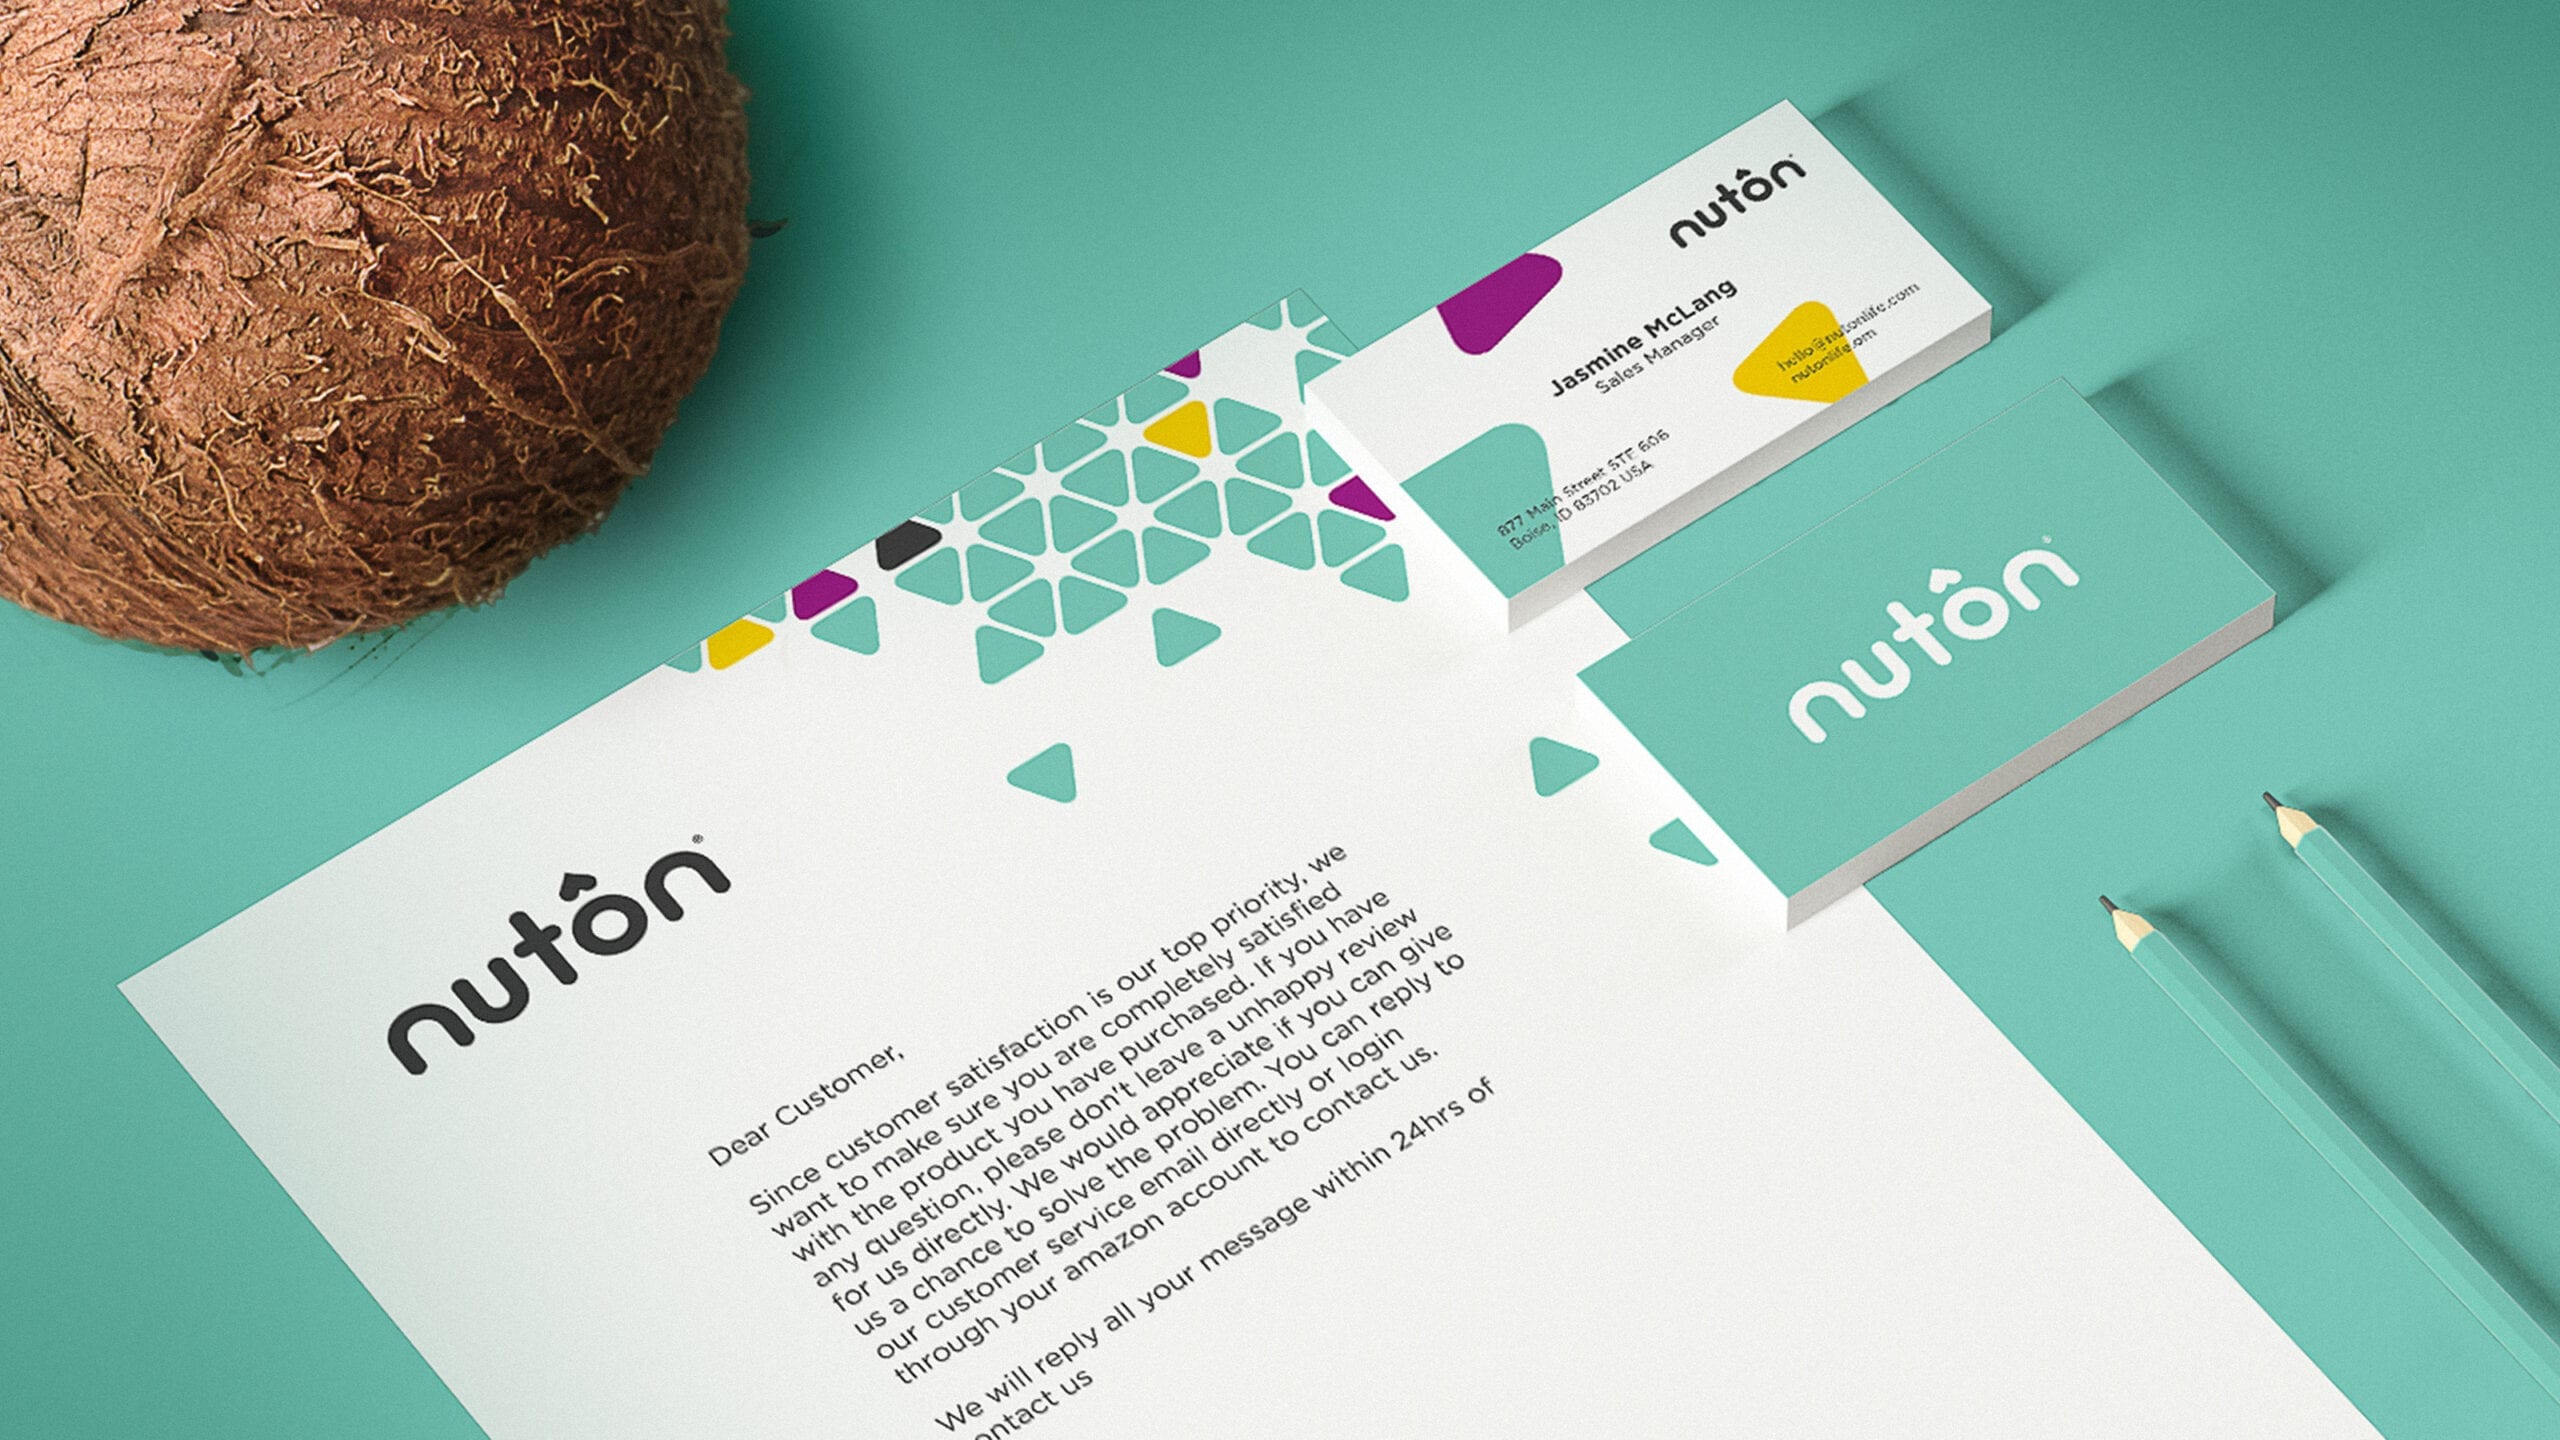 Nuton Material Design